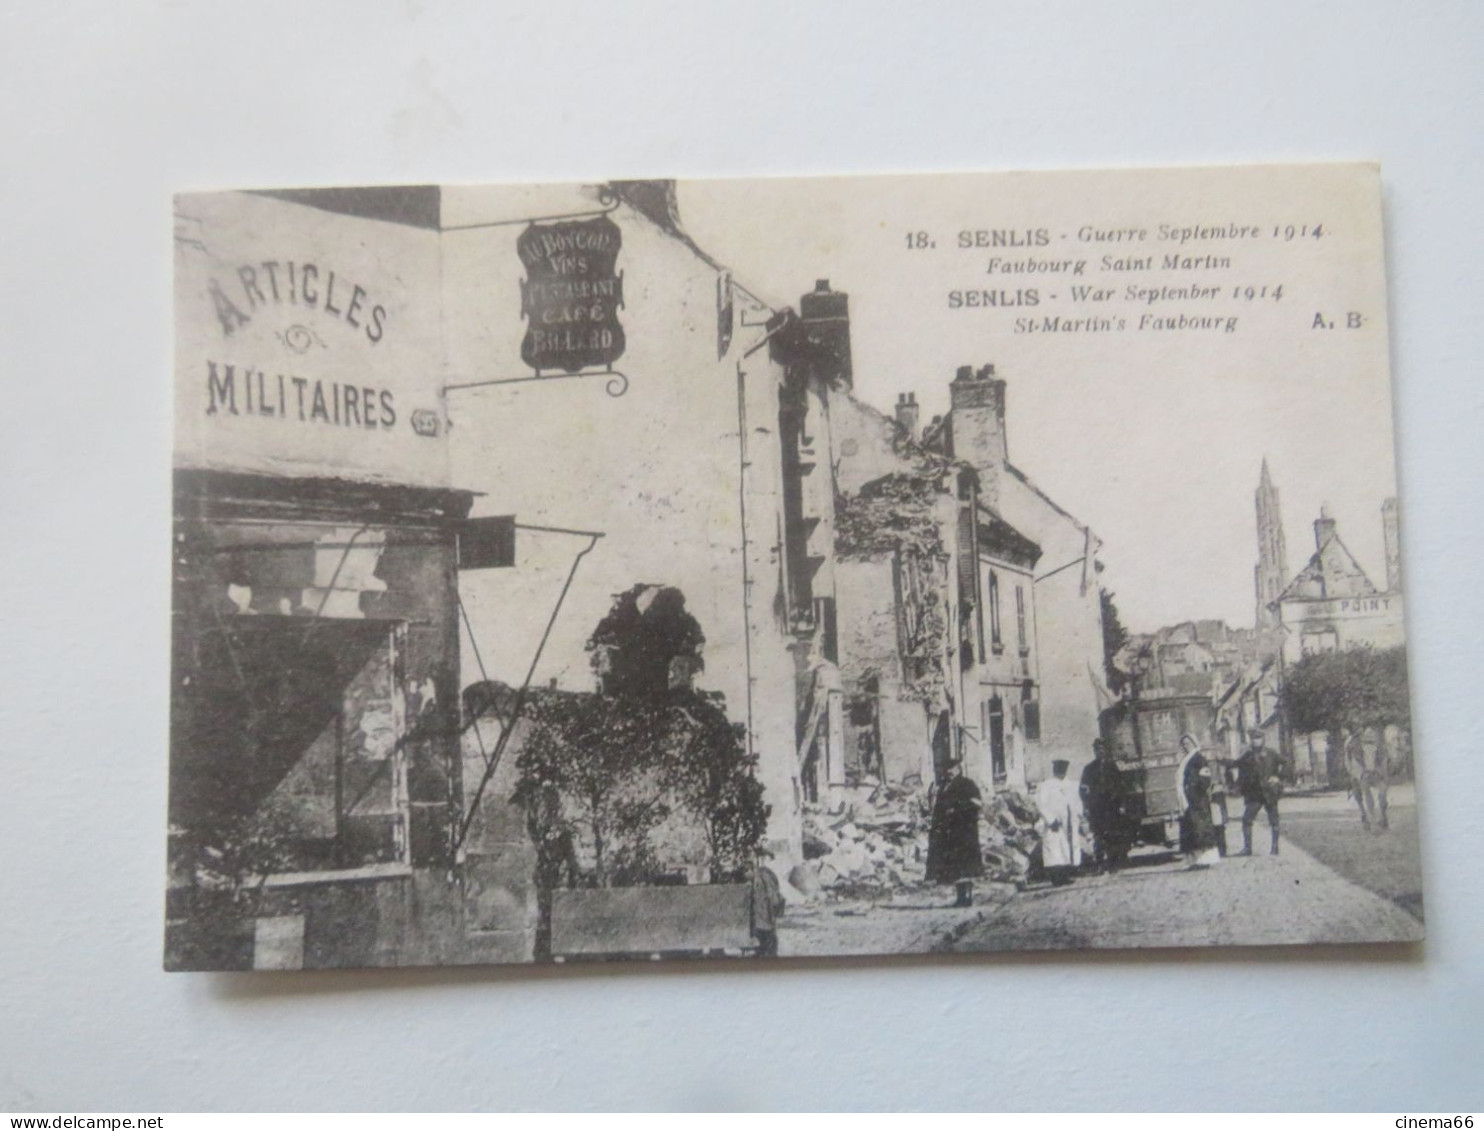 18. SENLIS - Guerre Septembre 1914 - Faubourg Saint-Martin - Senlis